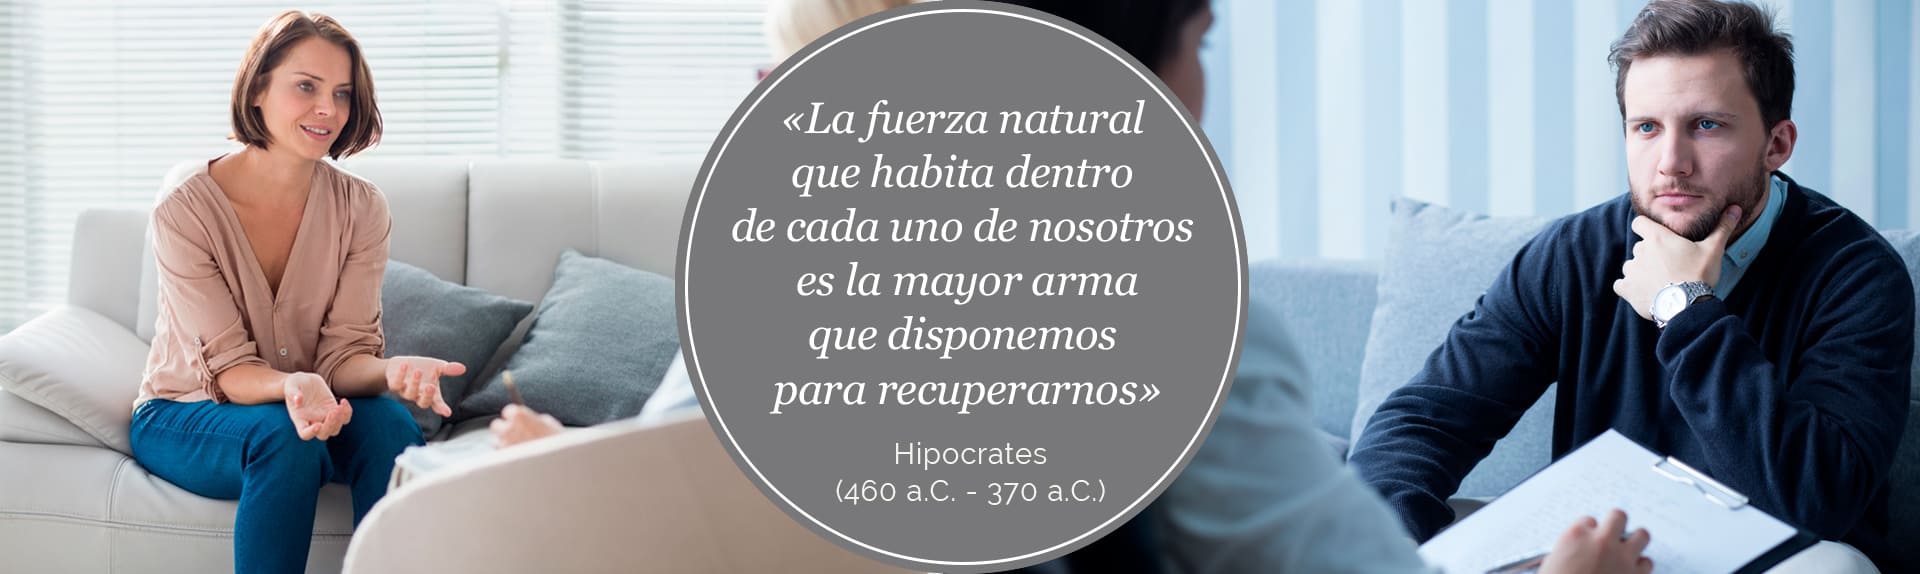 Atención a Adultos - Psicología clínica y psicoterapia Clínica Logos Albacete